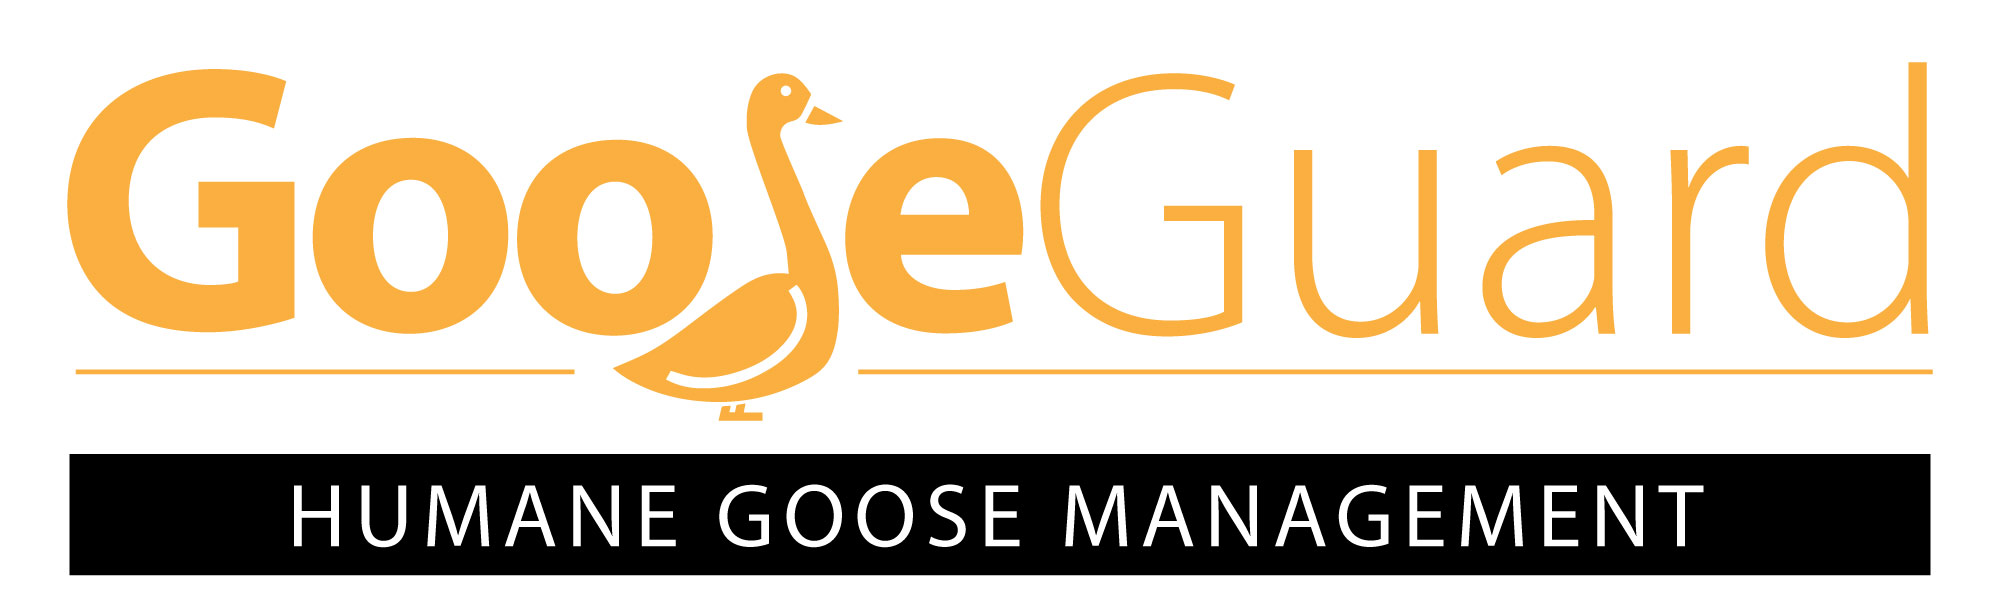 Gooseguard Logo Web